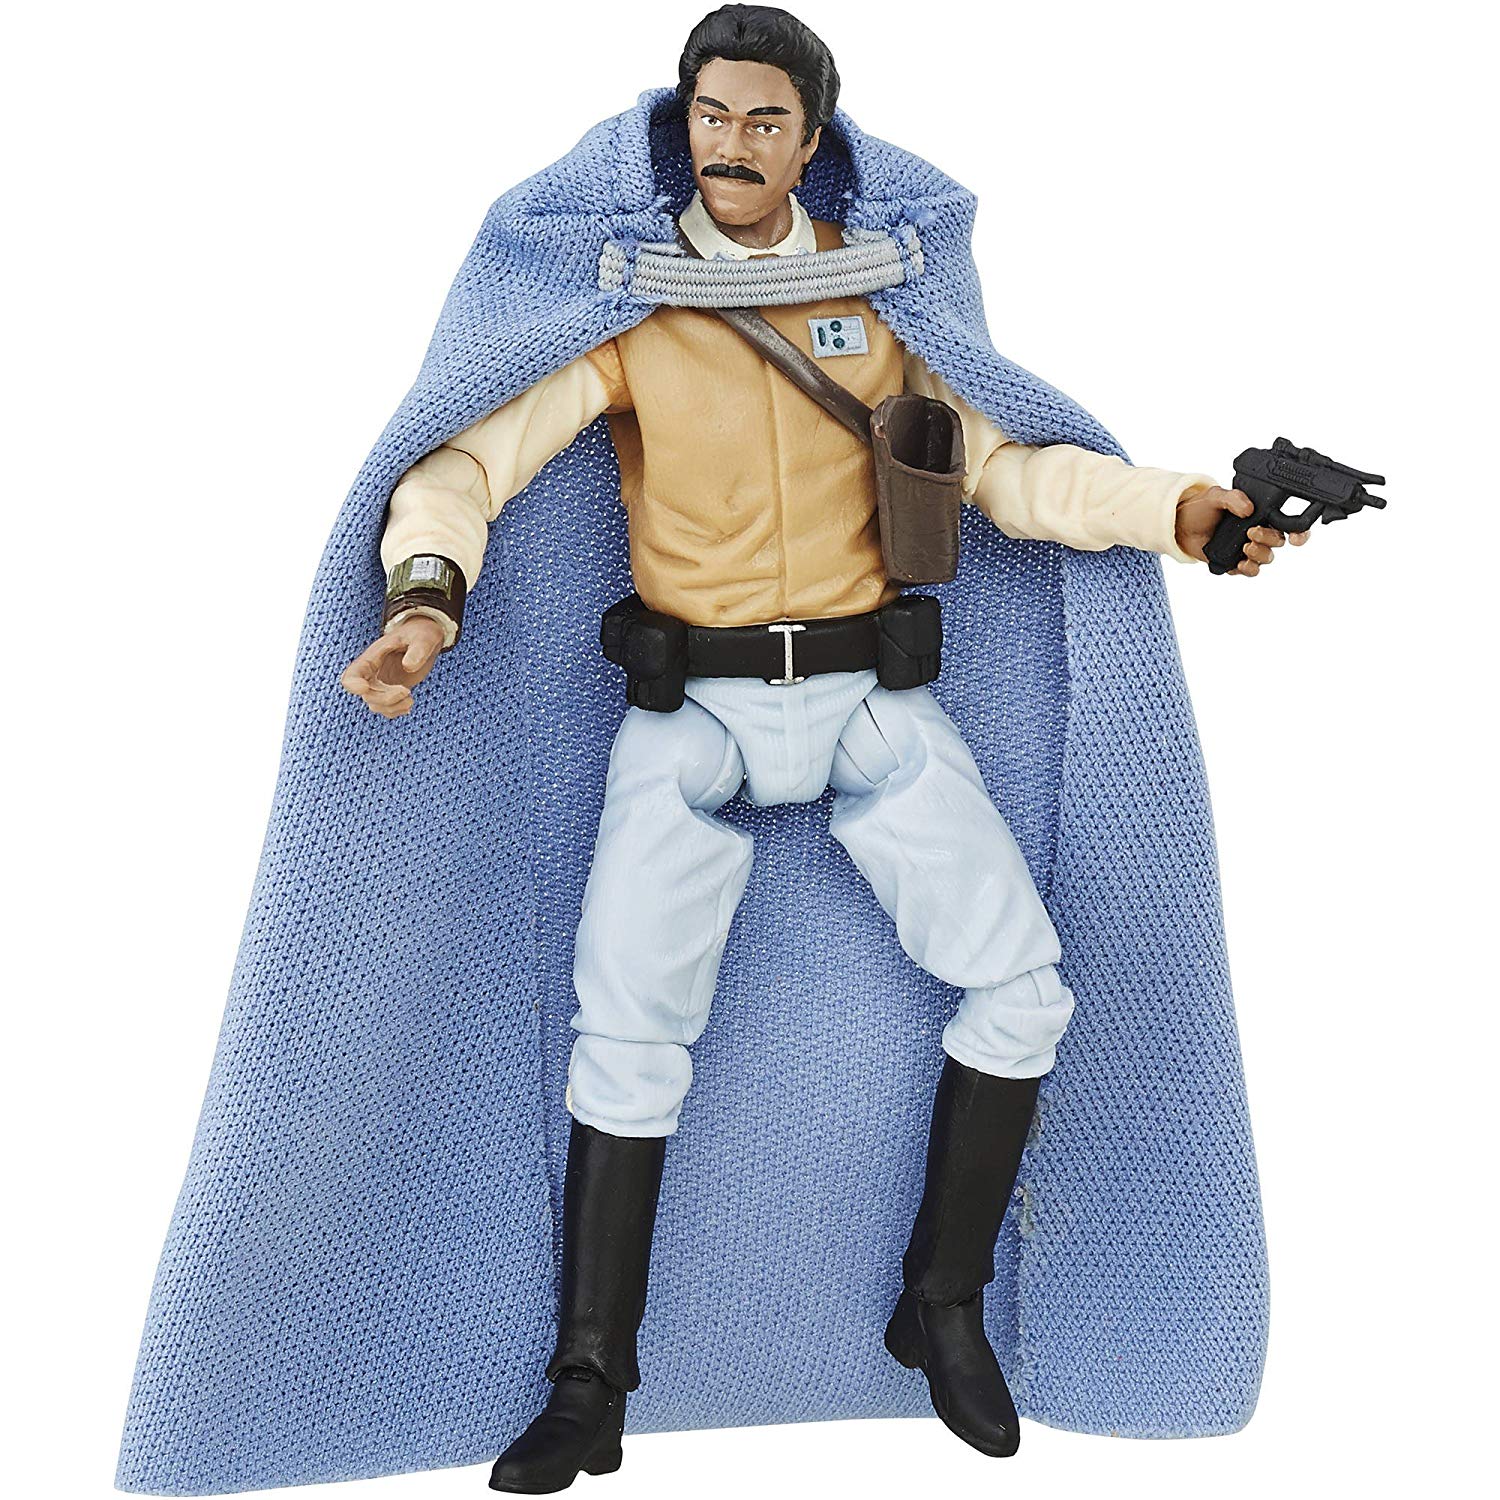 Hasbro Star Wars Black Series 2016 Lando Calrissian Walmart Exclusive 3.75 Inch Figure